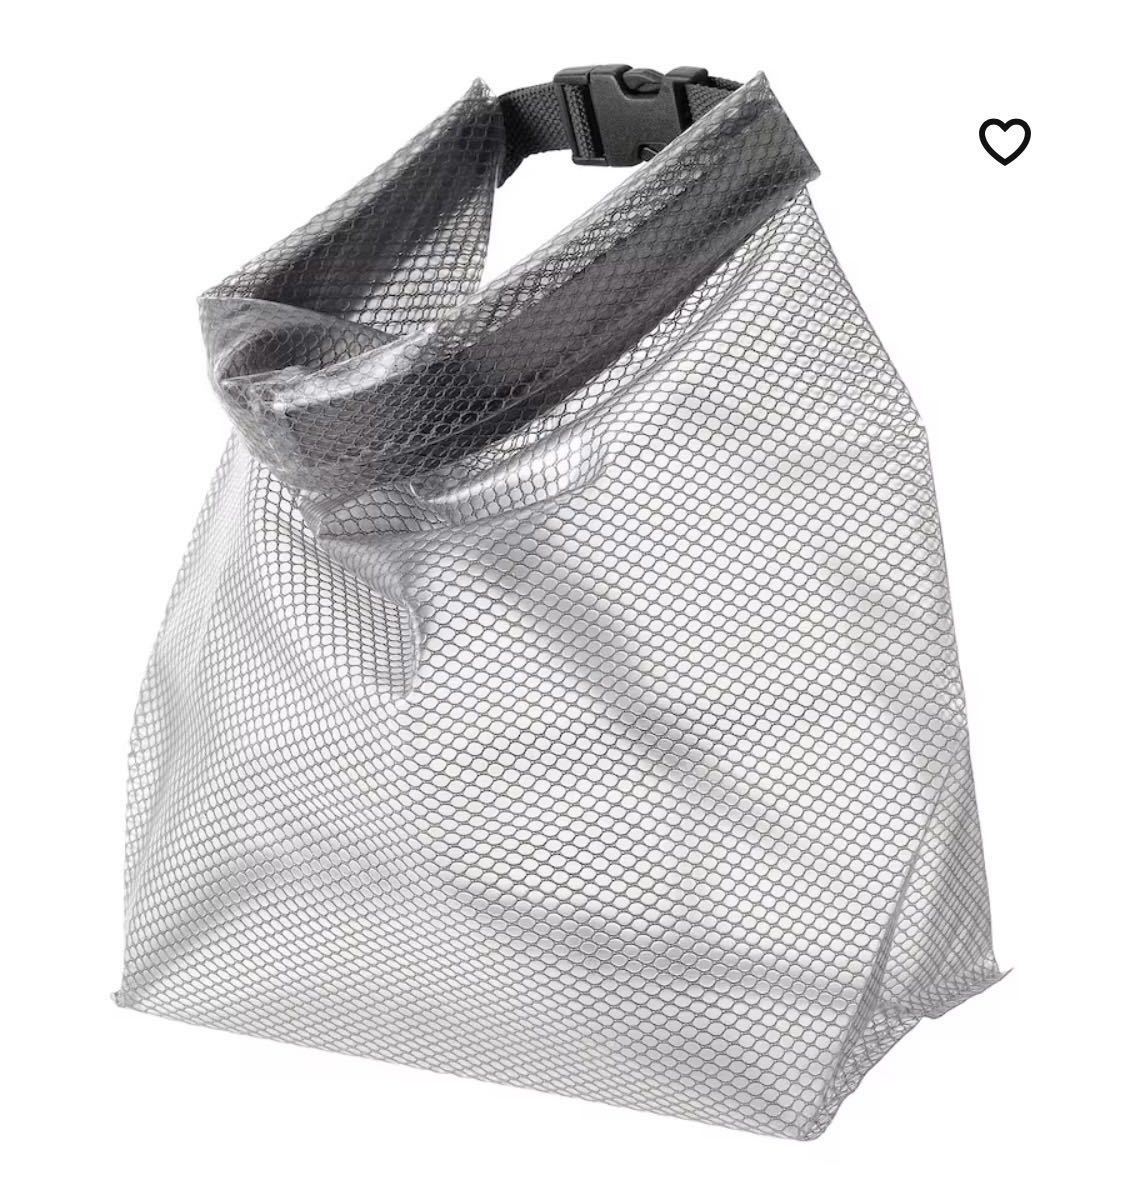  новый товар IKEA Ikea RENSARE Len sare водонепроницаемый сумка сумка 